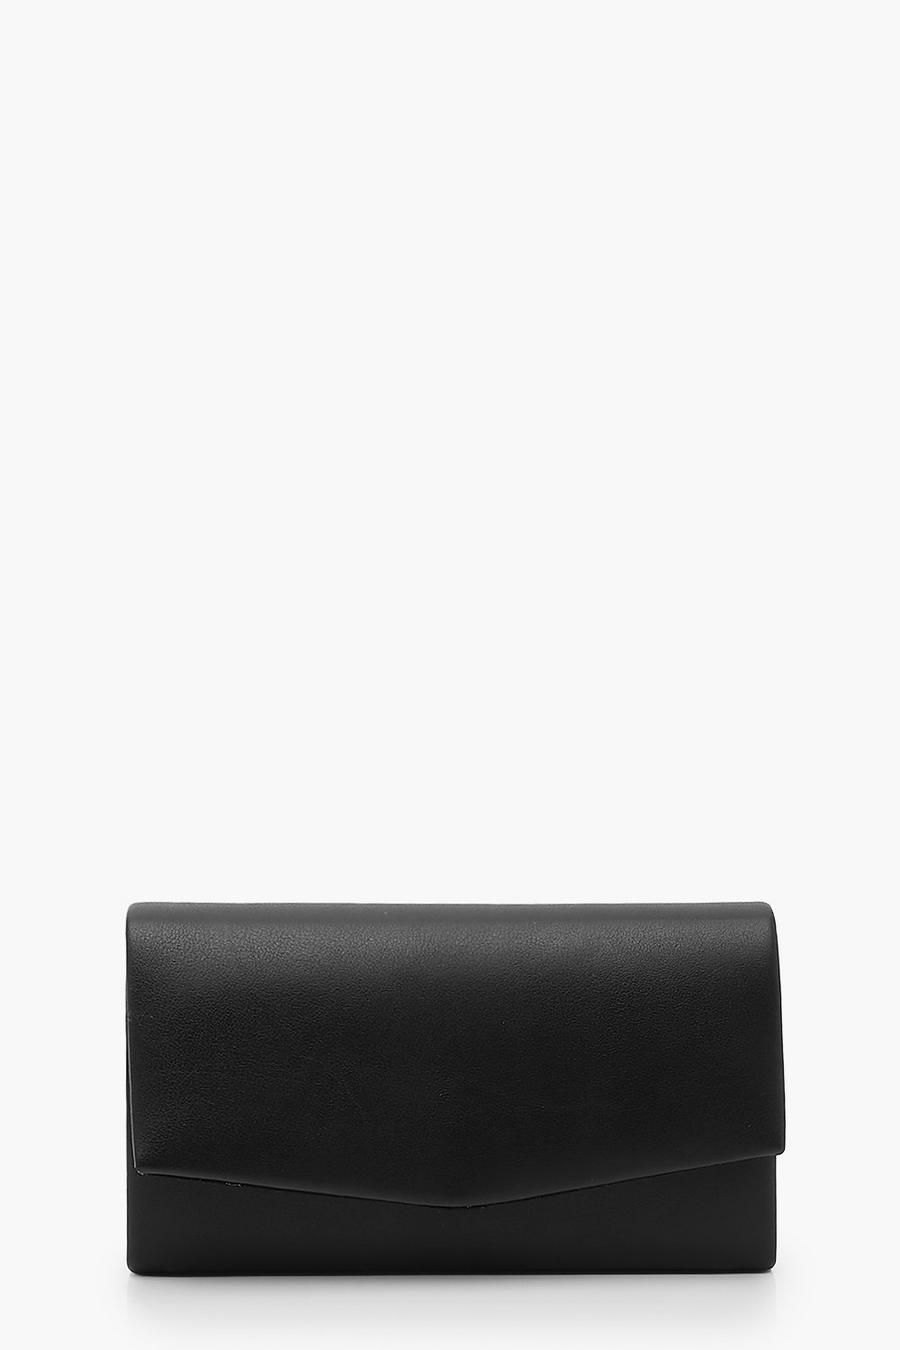 Bolso de cuero sintético suave texturizado de mano con cadena, Black